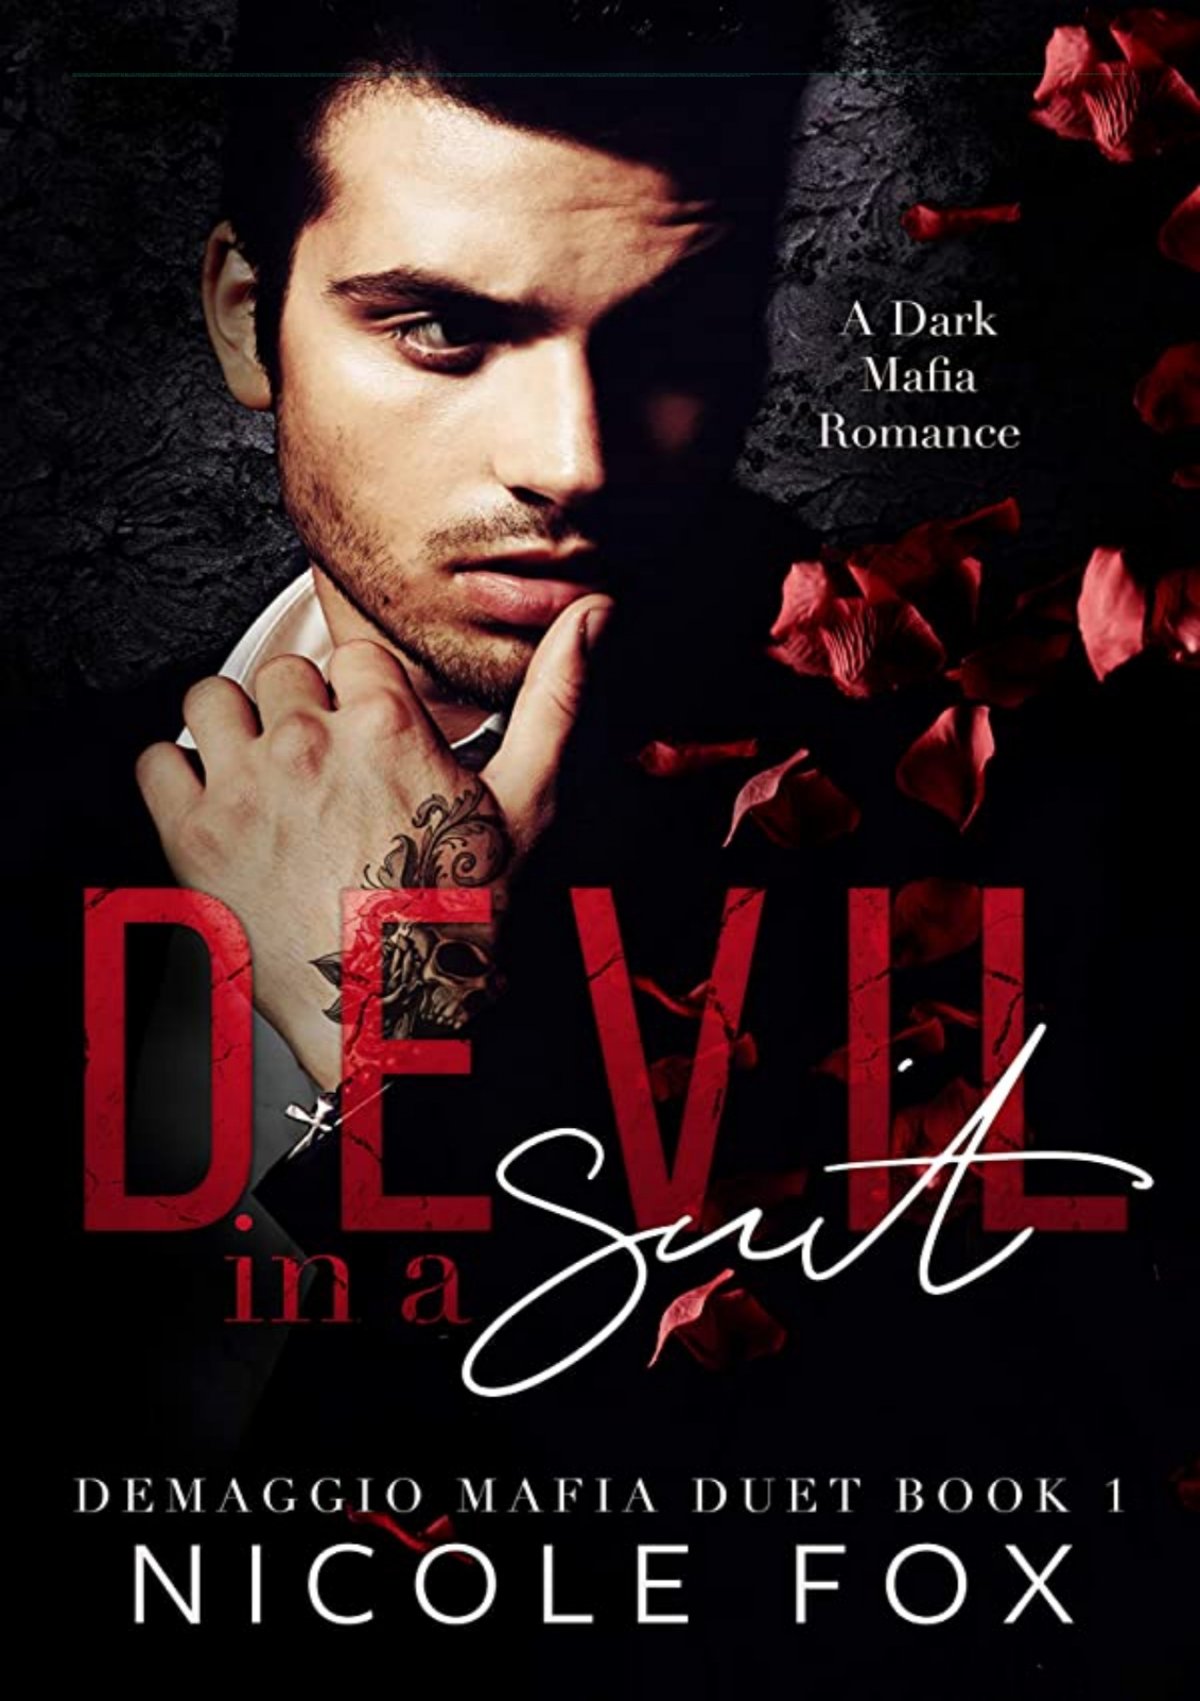 (PDF) Devil in a Suit: A Dark Mafia Romance (De Maggio Mafia Duet Book ...